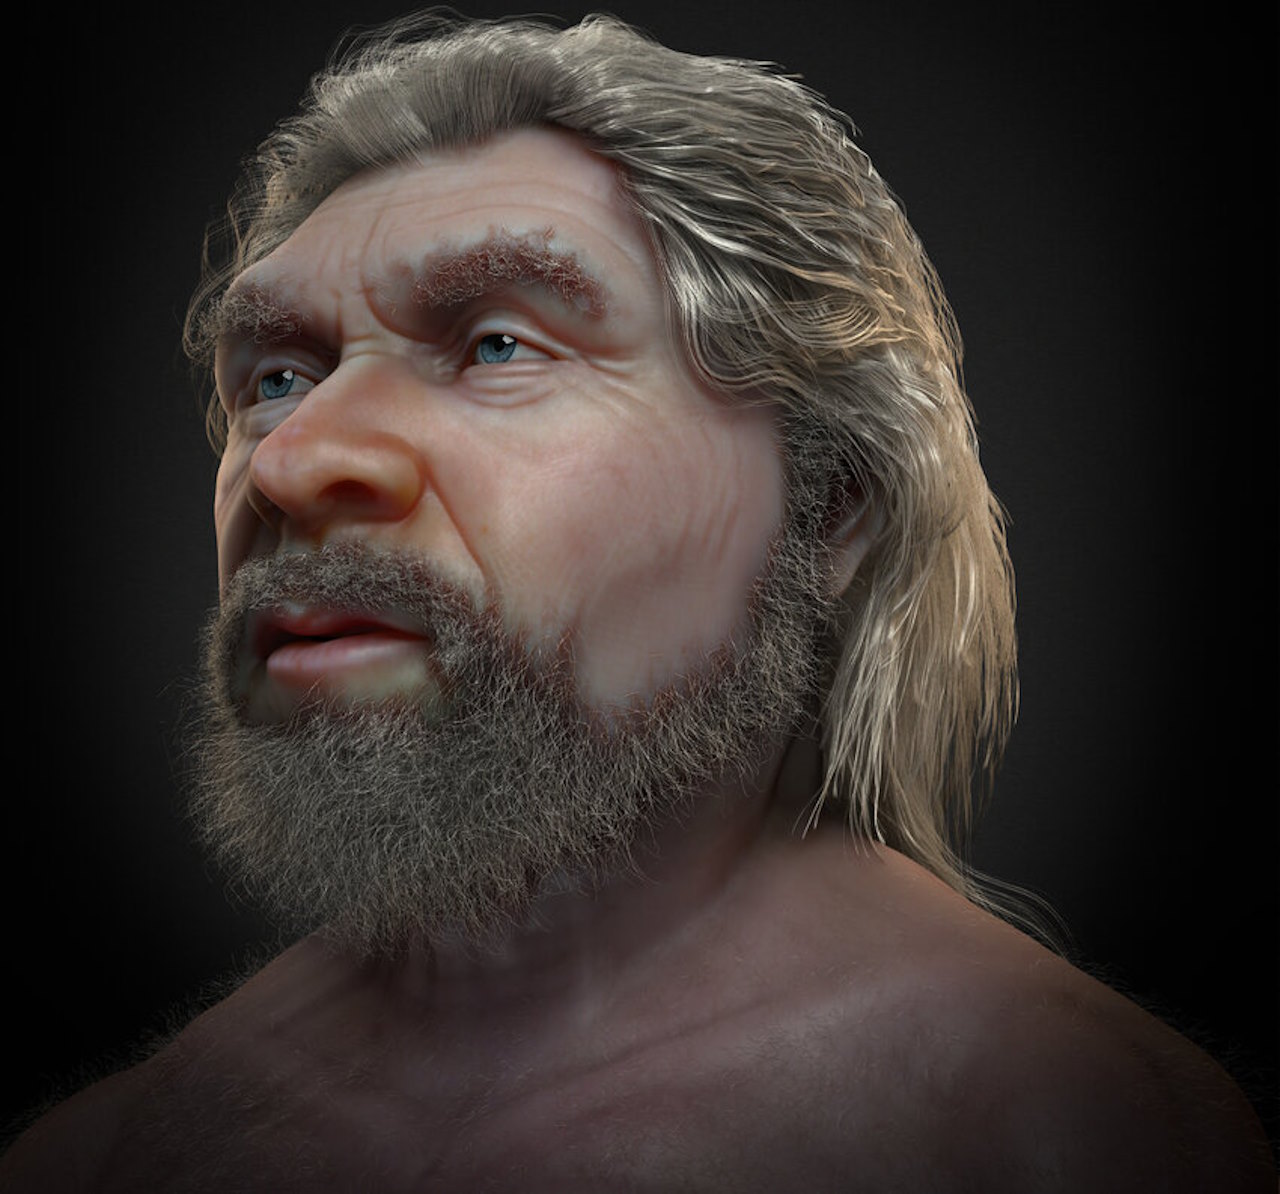 Реконструкція обличчя неандертальця на основі даних черепа з додаванням імовірного тону шкіри, очей та волосся. Cicero Moraes